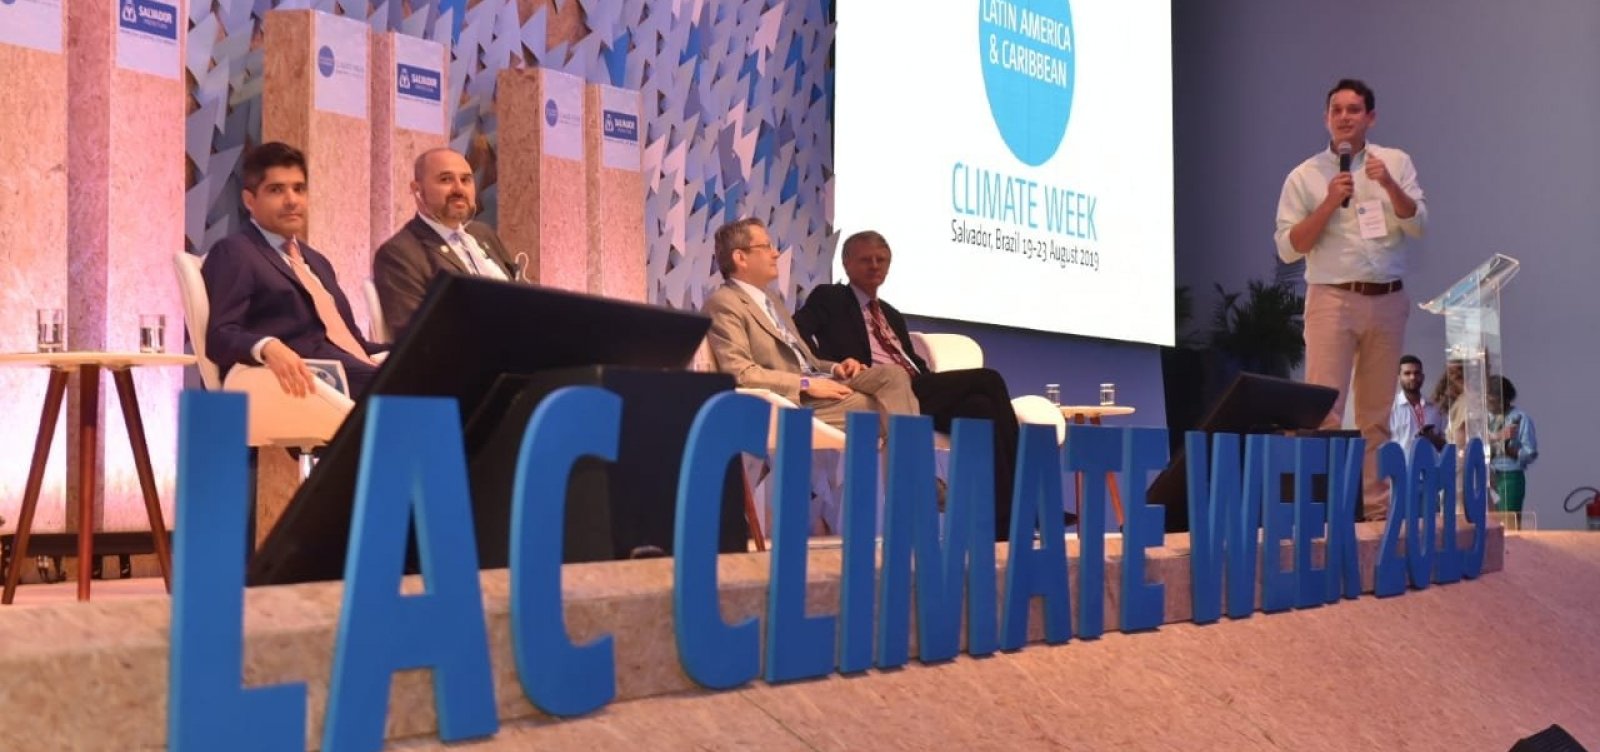 Segundo dia da Semana do Clima tem debates sobre financiamento climático